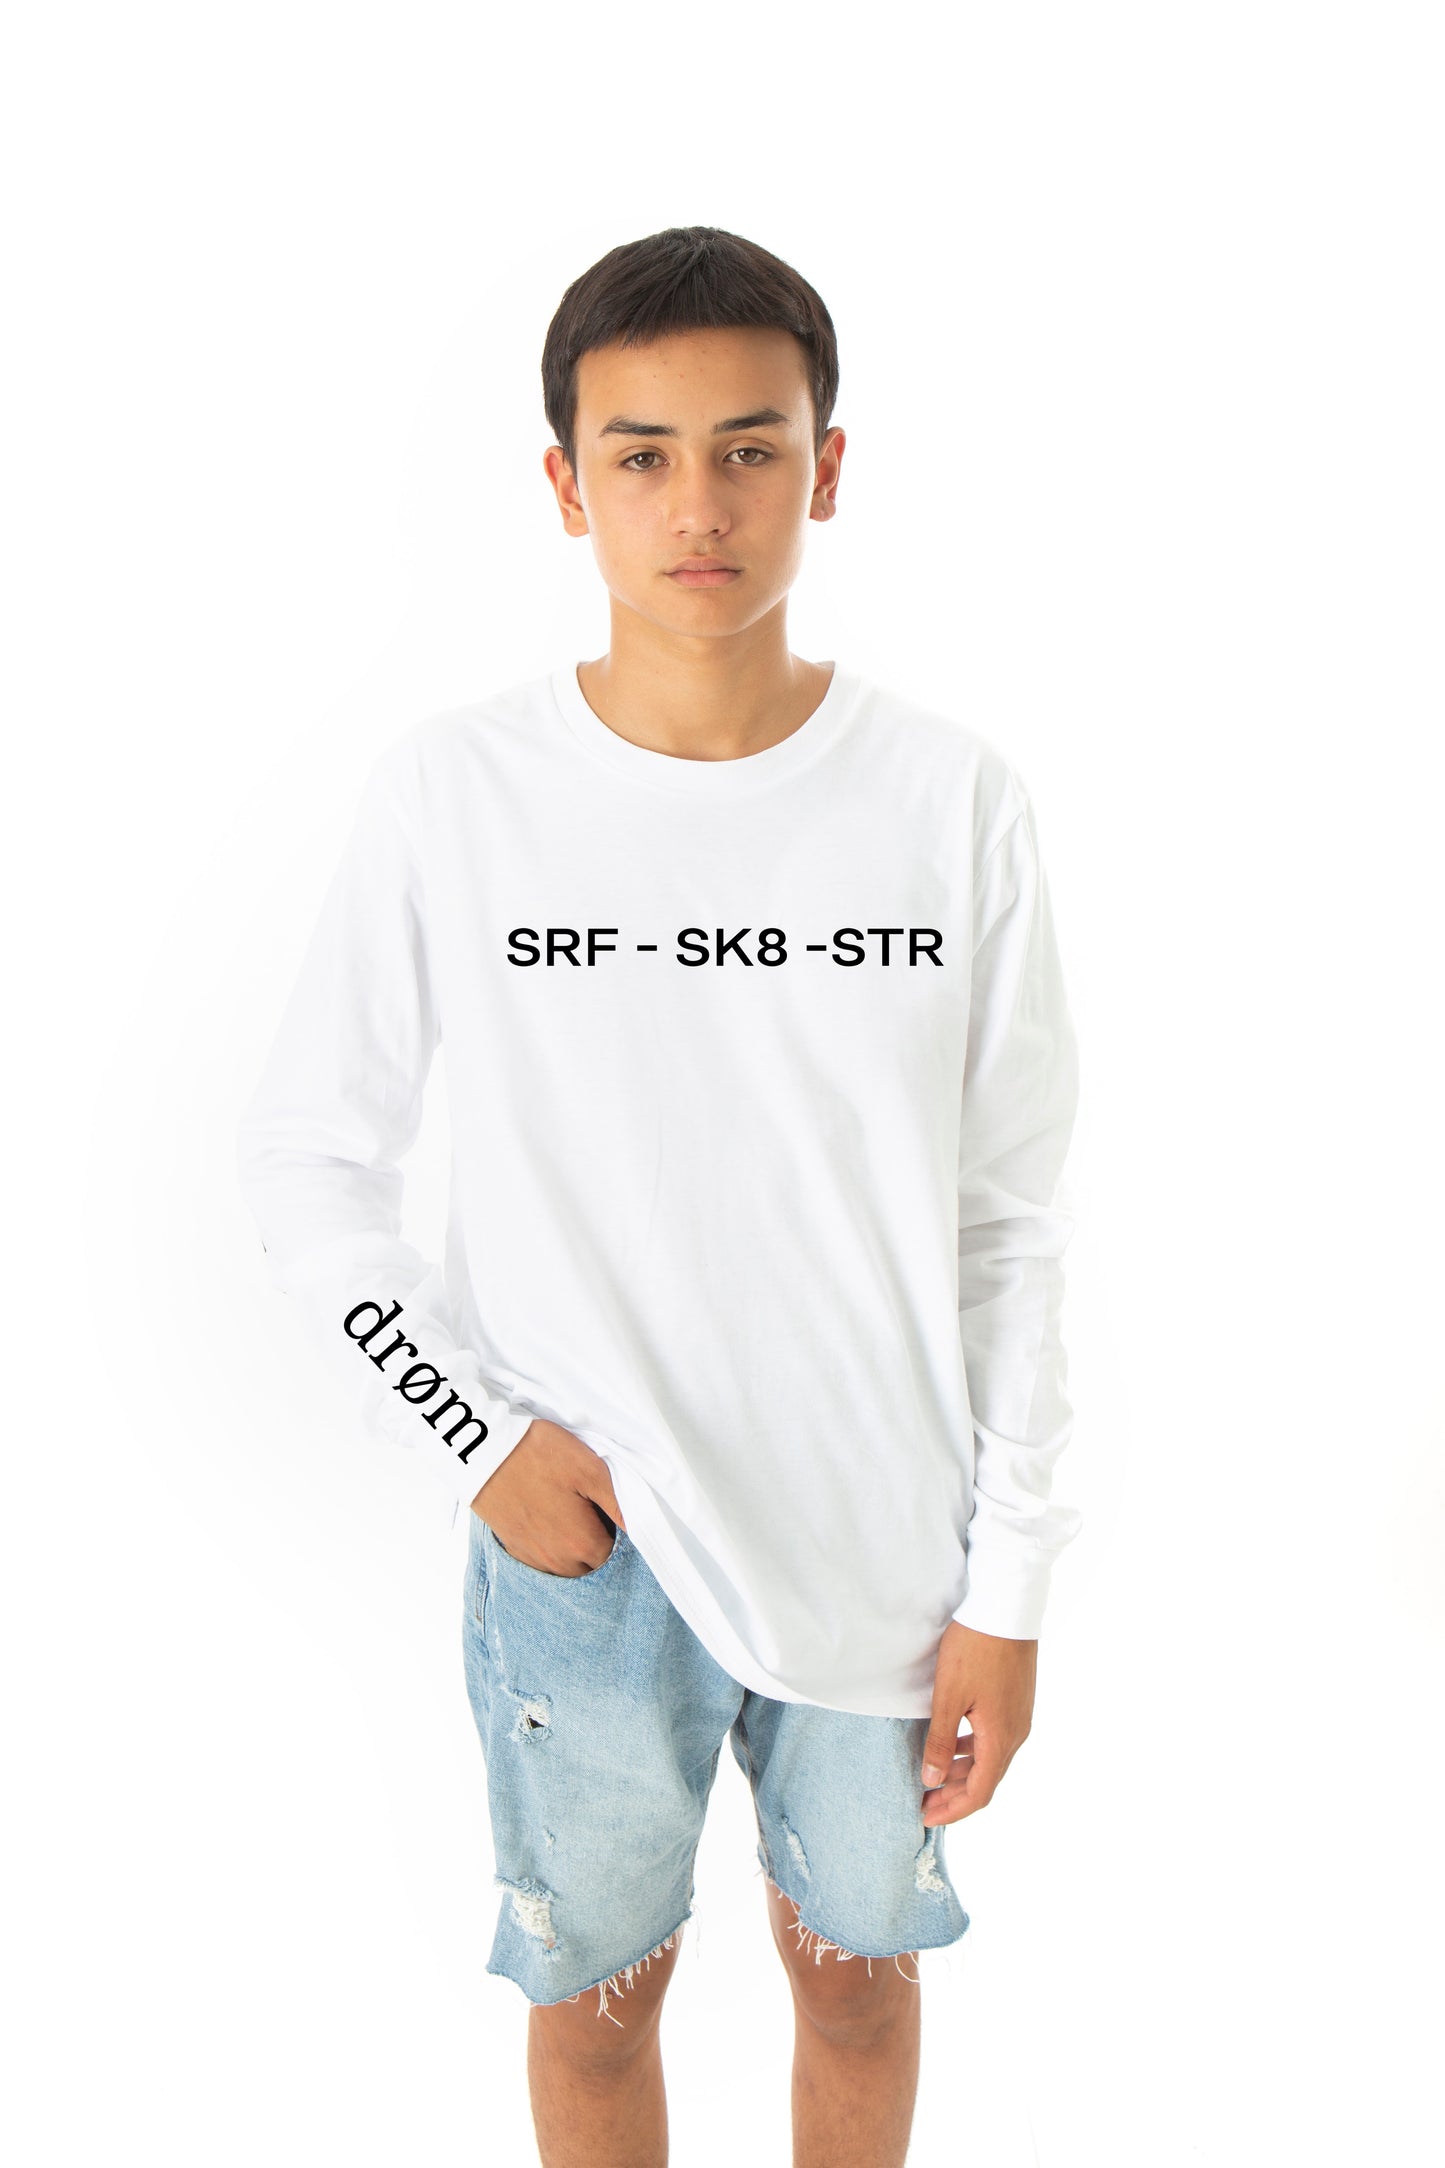 Kids Long Sleeve tee - NEW - SRF - SK8 - STR design